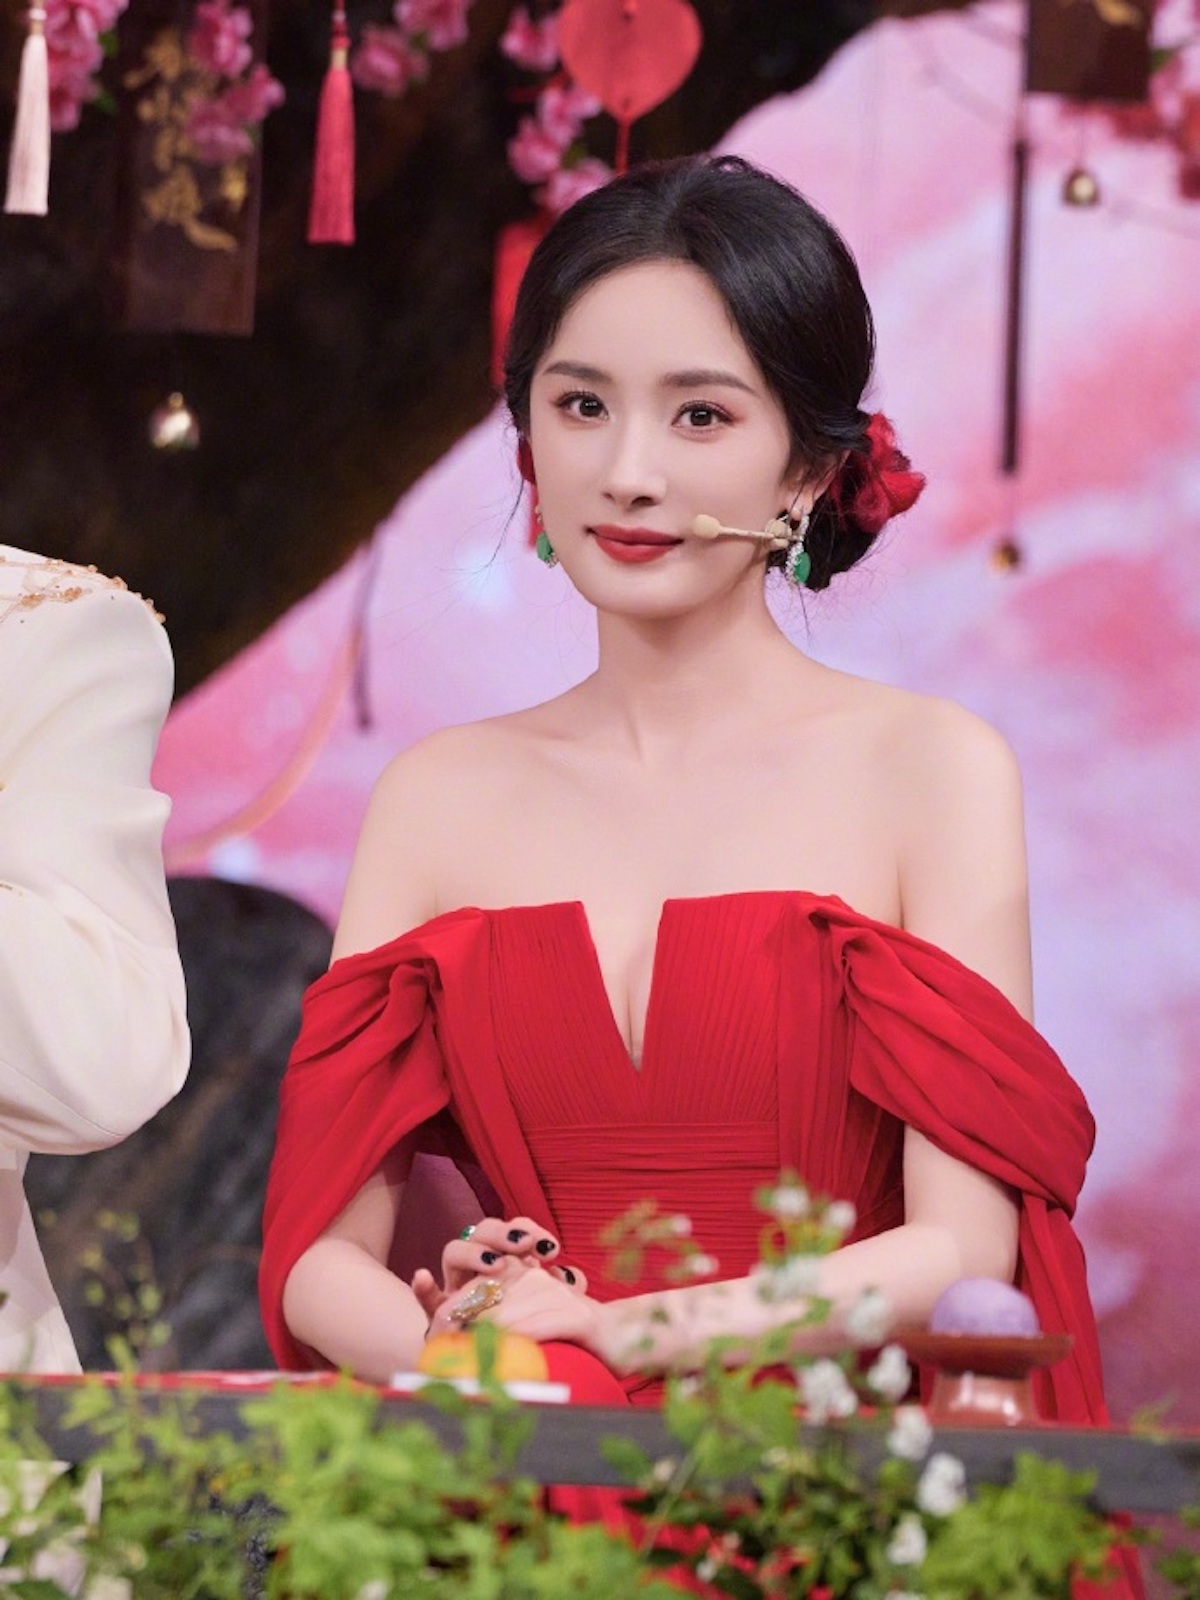 "Chồng hụt" công khai bạn gái, Dương Mịch bỗng bị réo gọi vì scandal máu lạnh "đá" tình cũ- Ảnh 7.